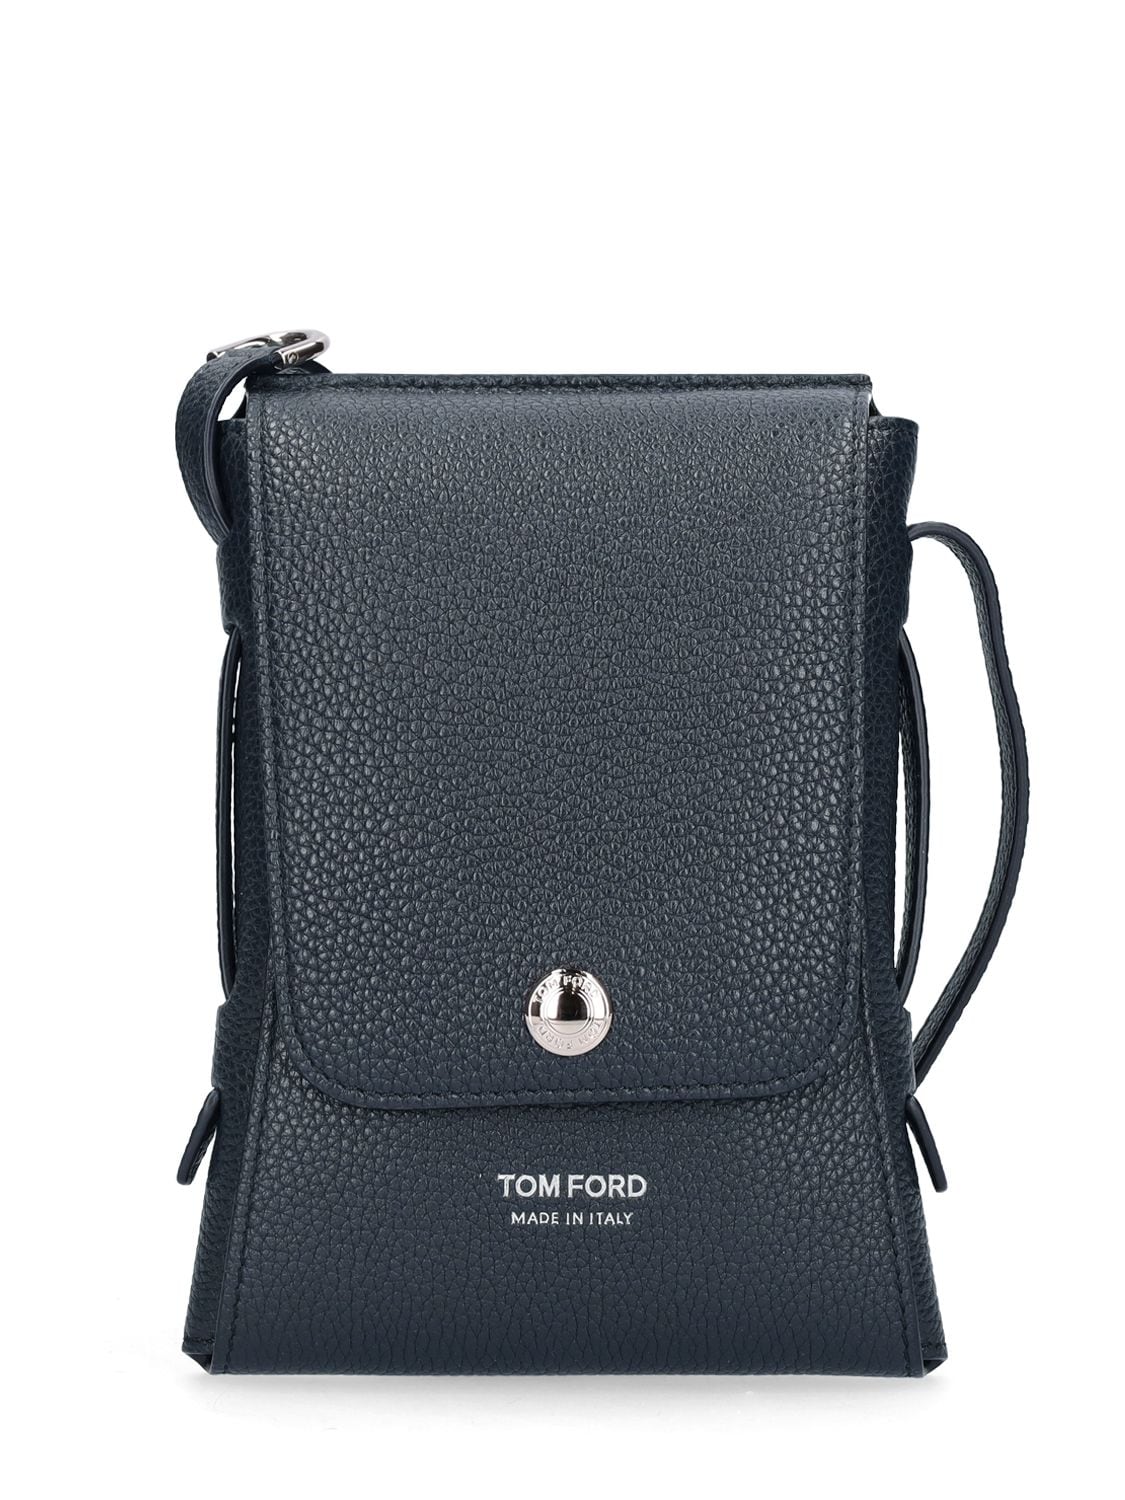 TOM FORD Crossbody Bags for Men | ModeSens